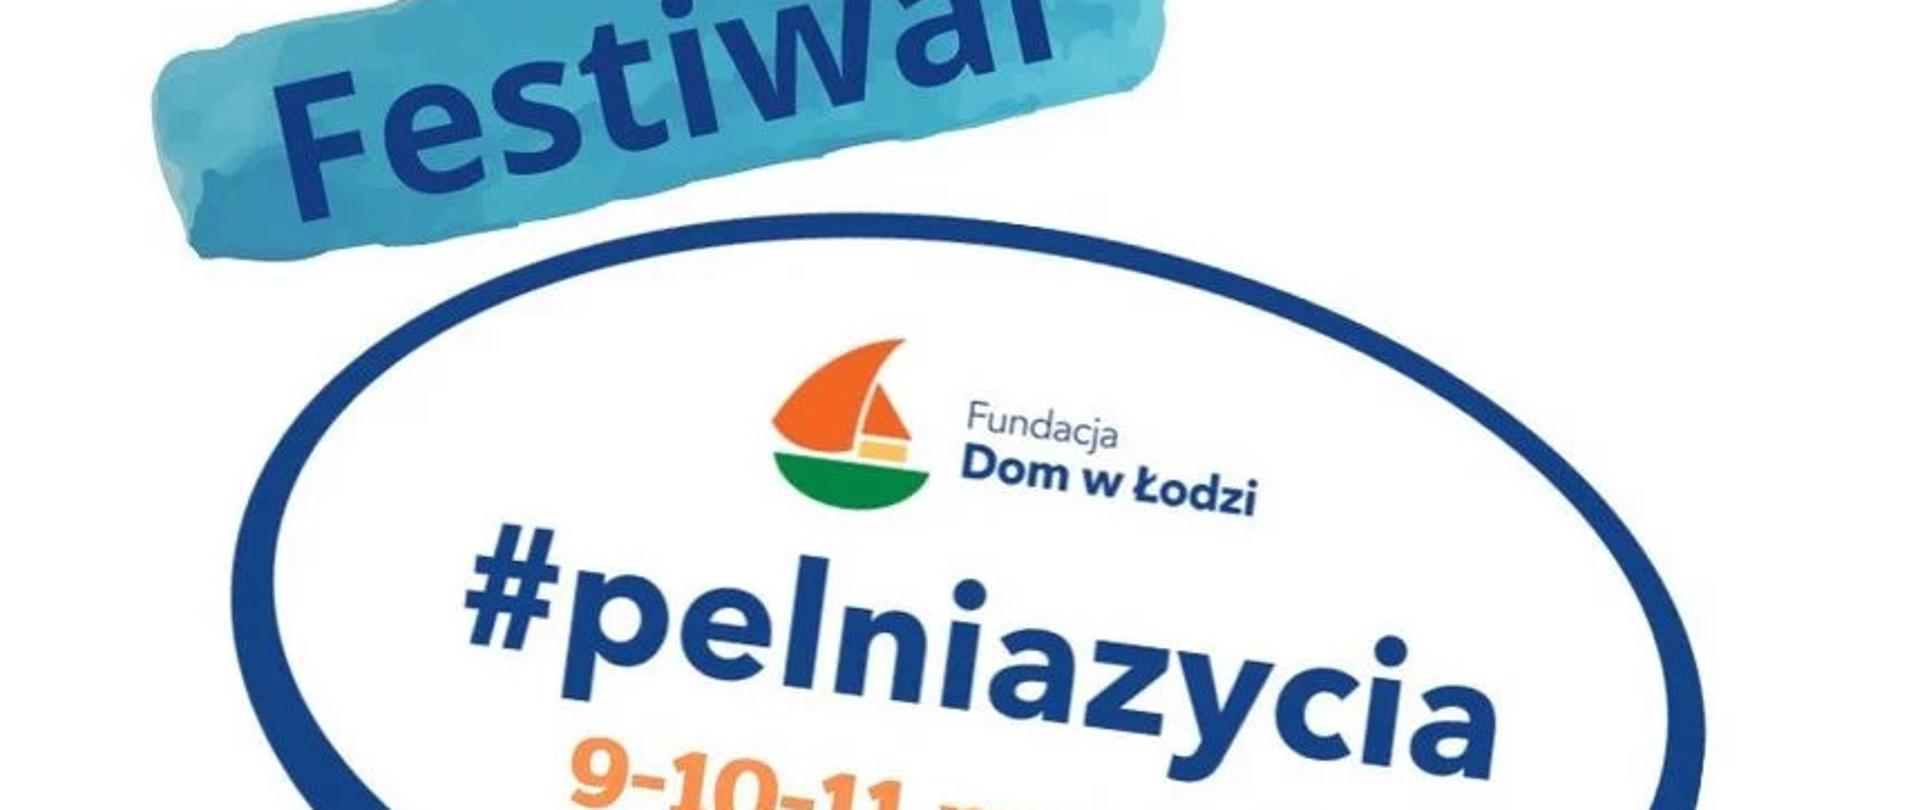 Wielobarwna grafika. Fundacja Dom w Łodzi. Festiwal #pelniazycia w dniach 9-10-11 marca 2023